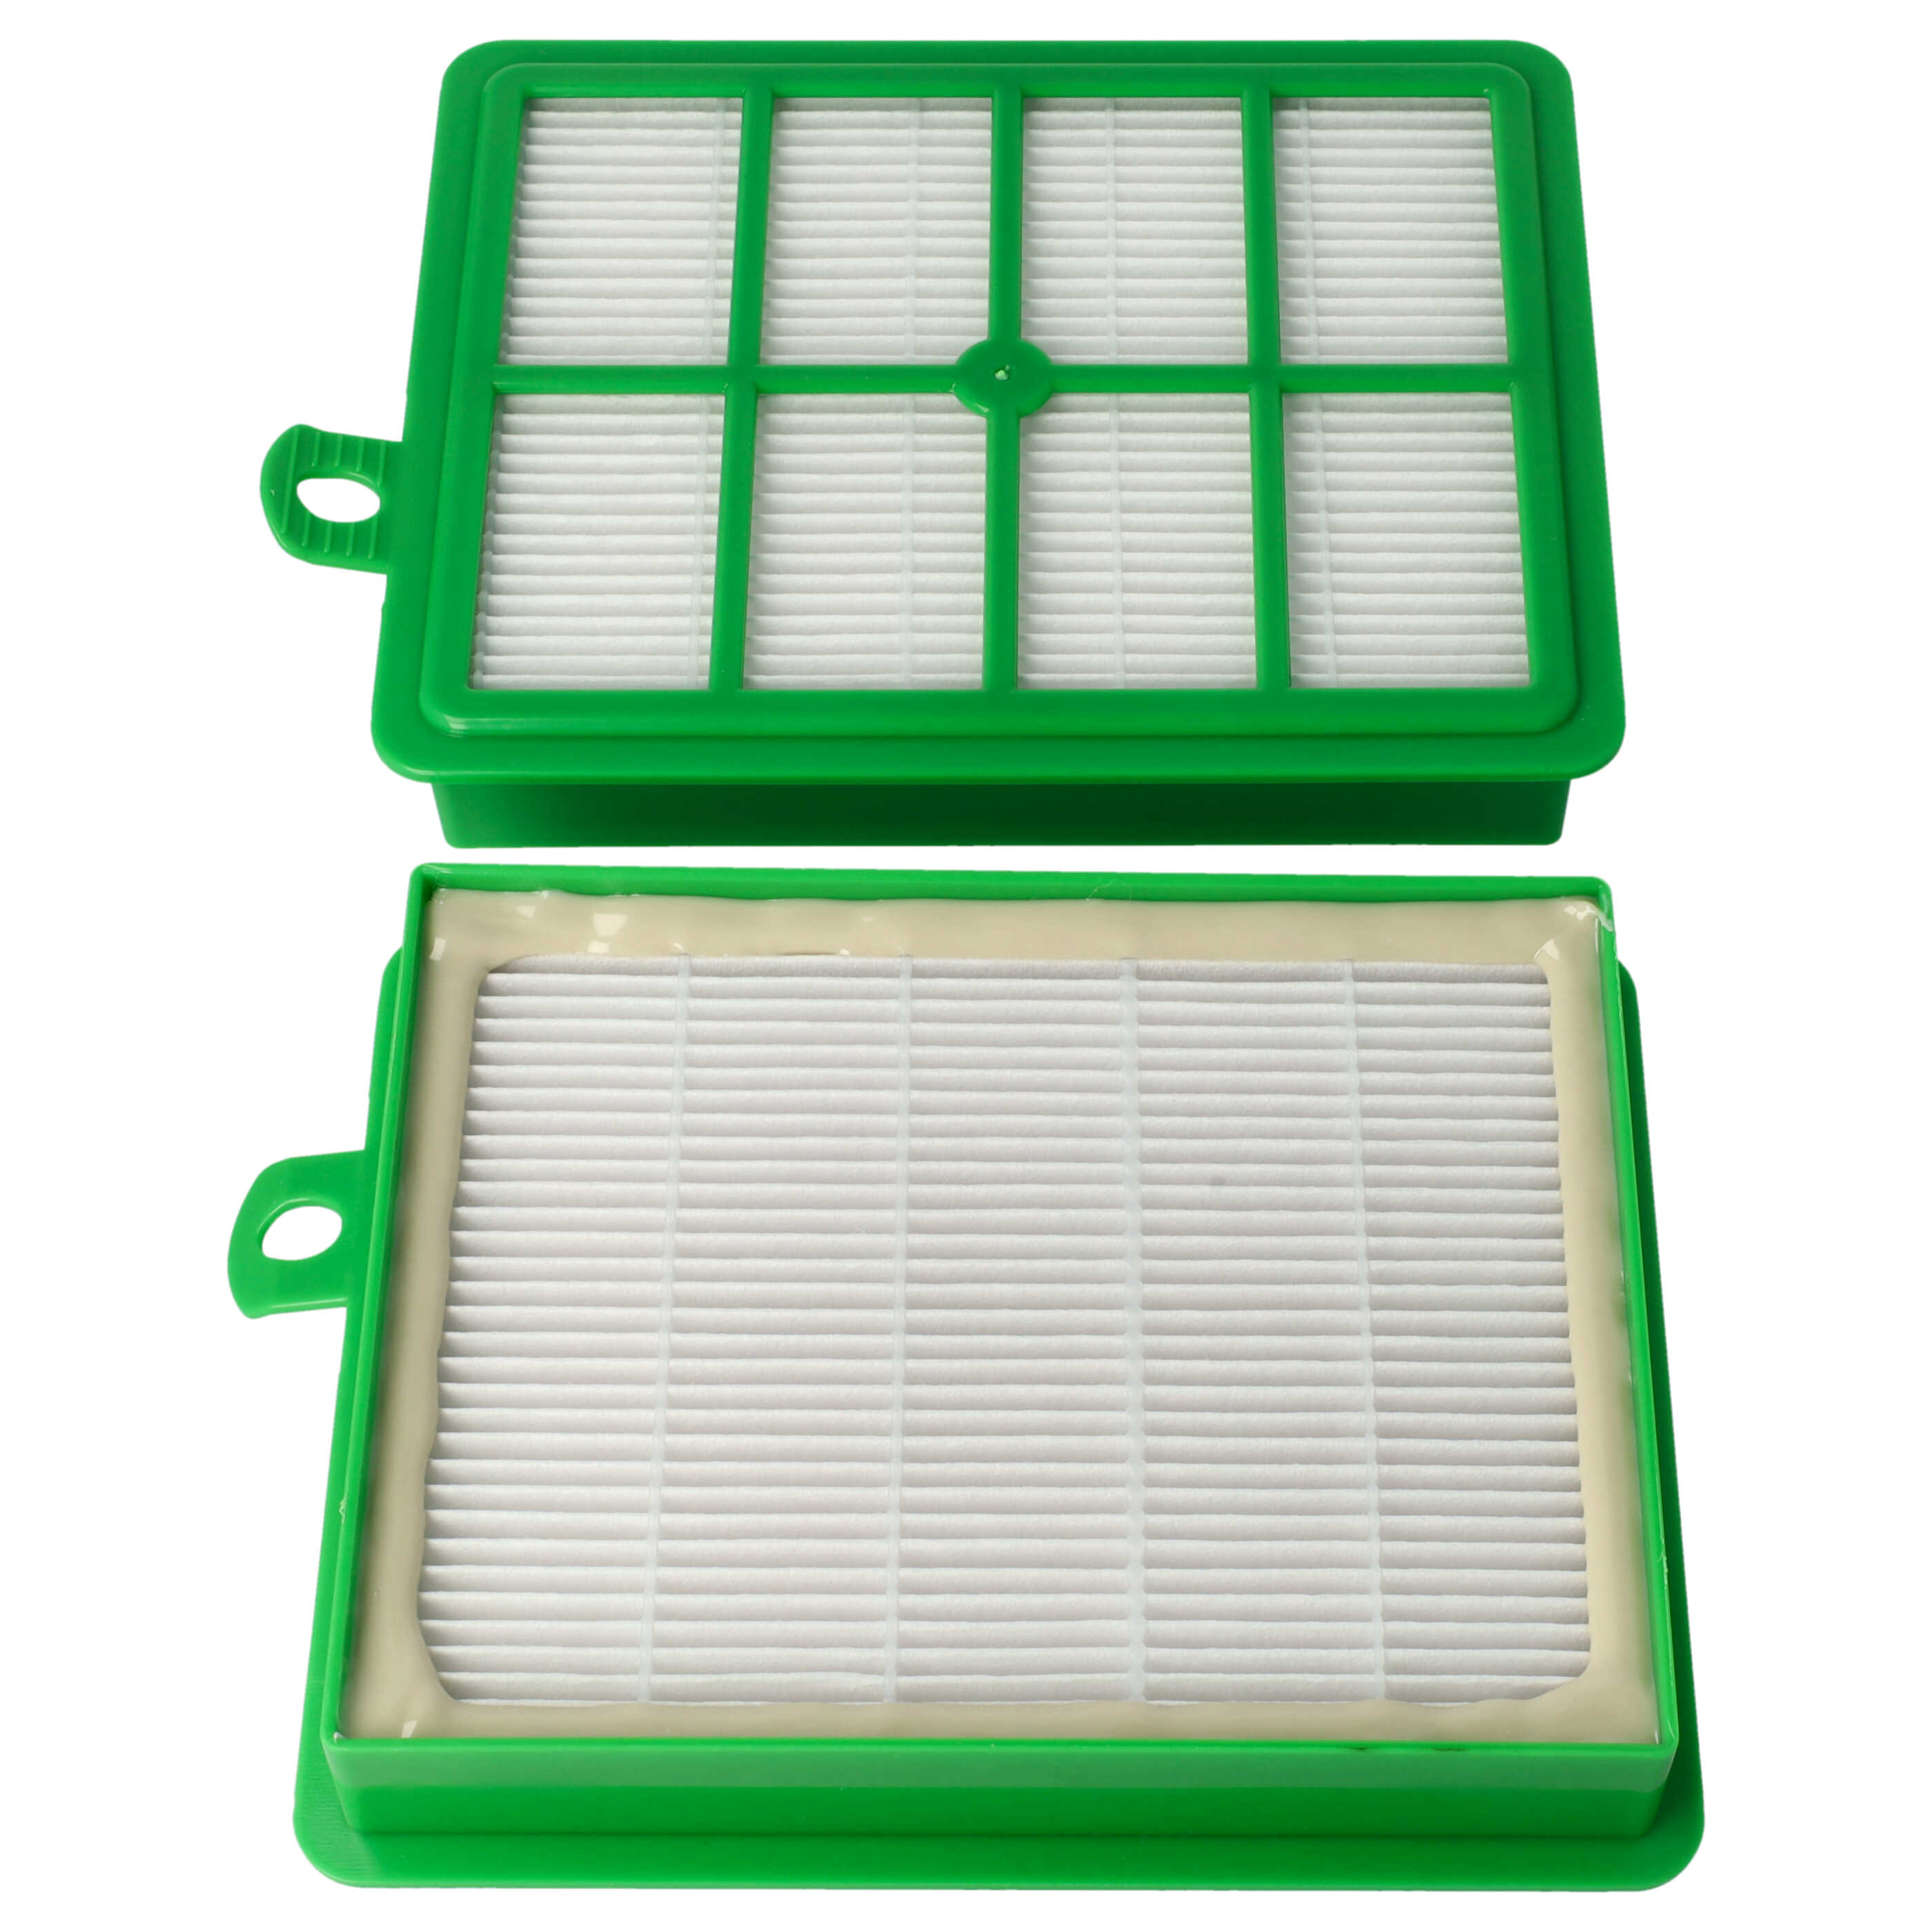 2x Filtro sostituisce AEG ASF1W, AFS1, E 12, AFS1W, AEFG12W per aspirapolvere - filtro HEPA, bianco / verde